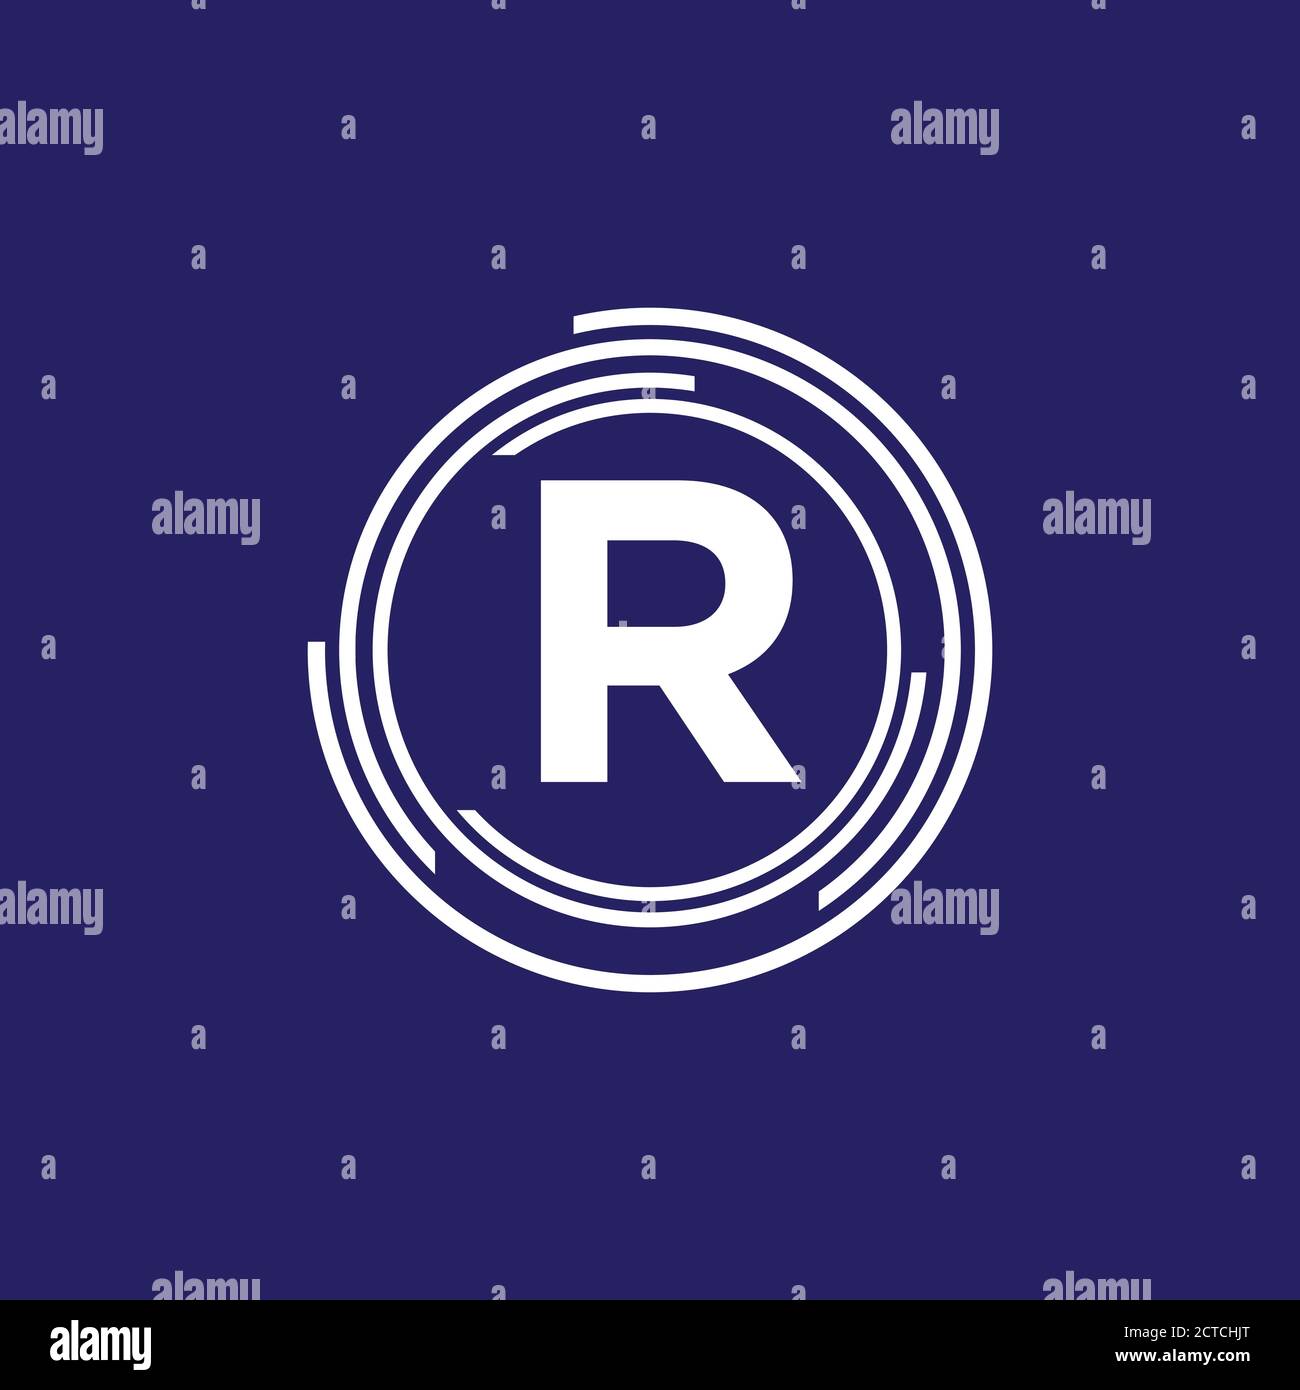 Kombinationskreis R Initial Letter Logo Design Modern Tech Symbol Icon Vektor Grafik Konzept Illustrationen Stock Vektor